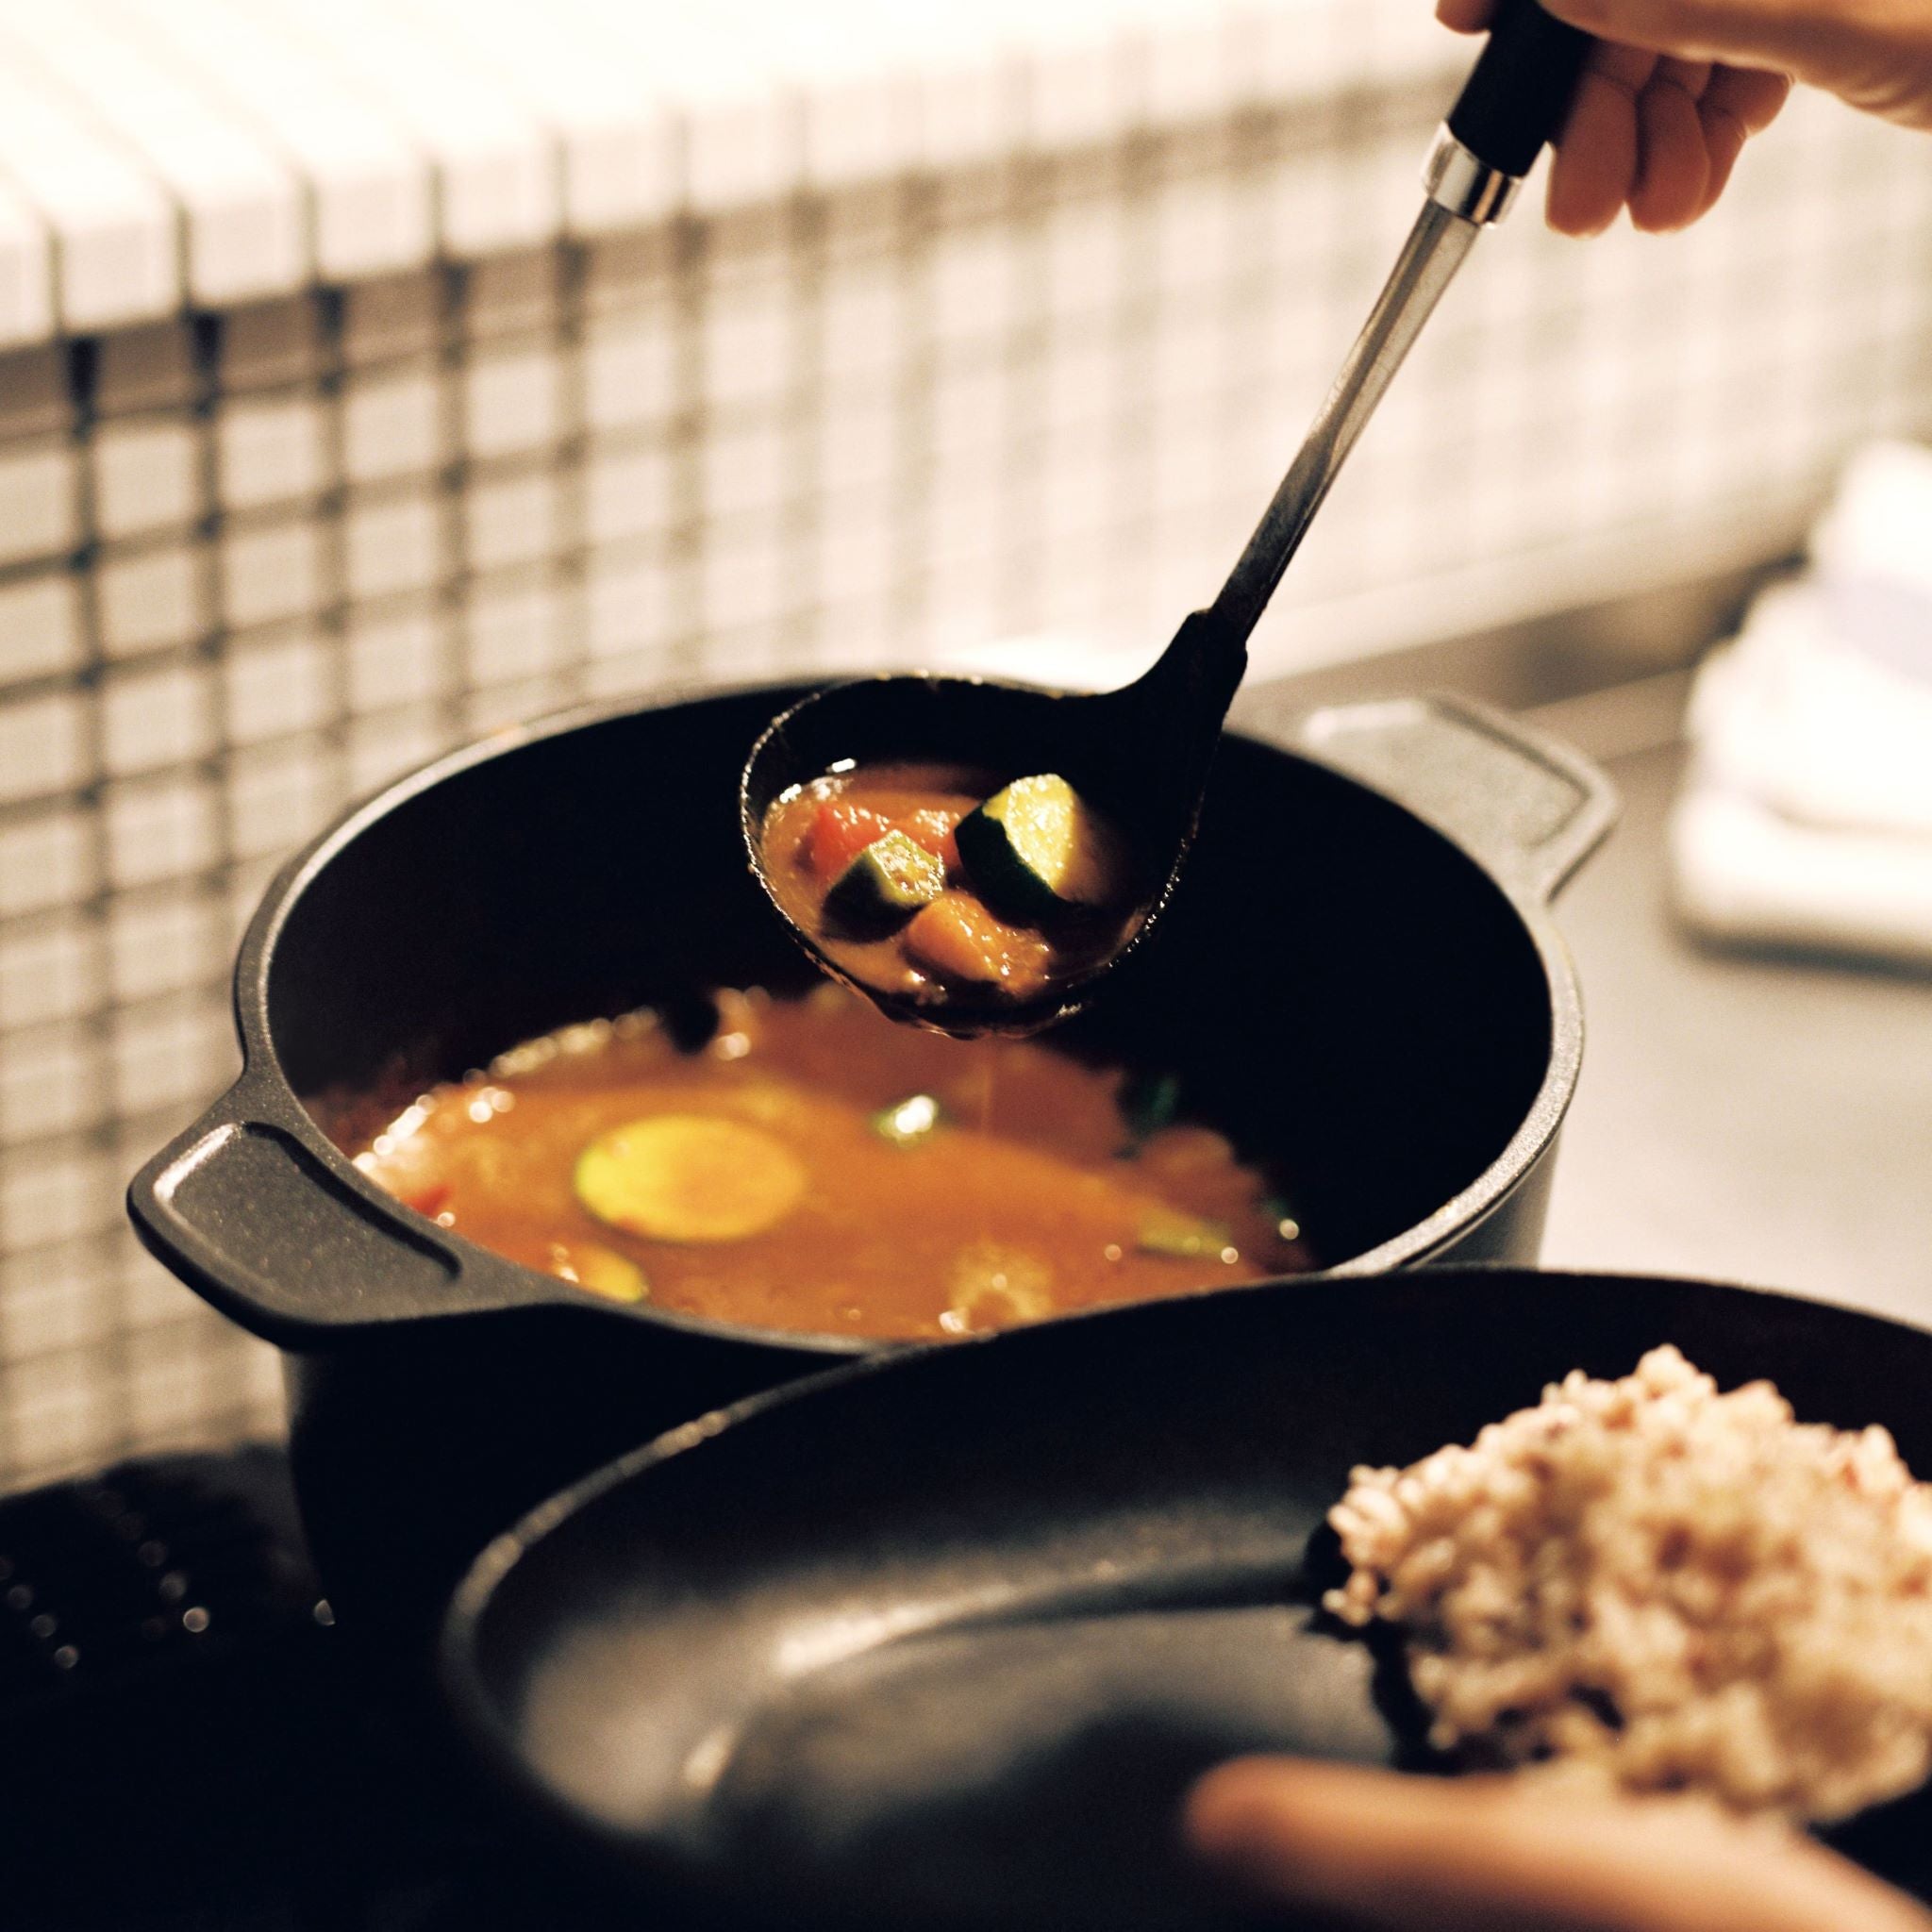 鋳物 鍋 | 味わい鍋 両手 22㎝ | 4.6L・6合 | 文化軽金属鋳造